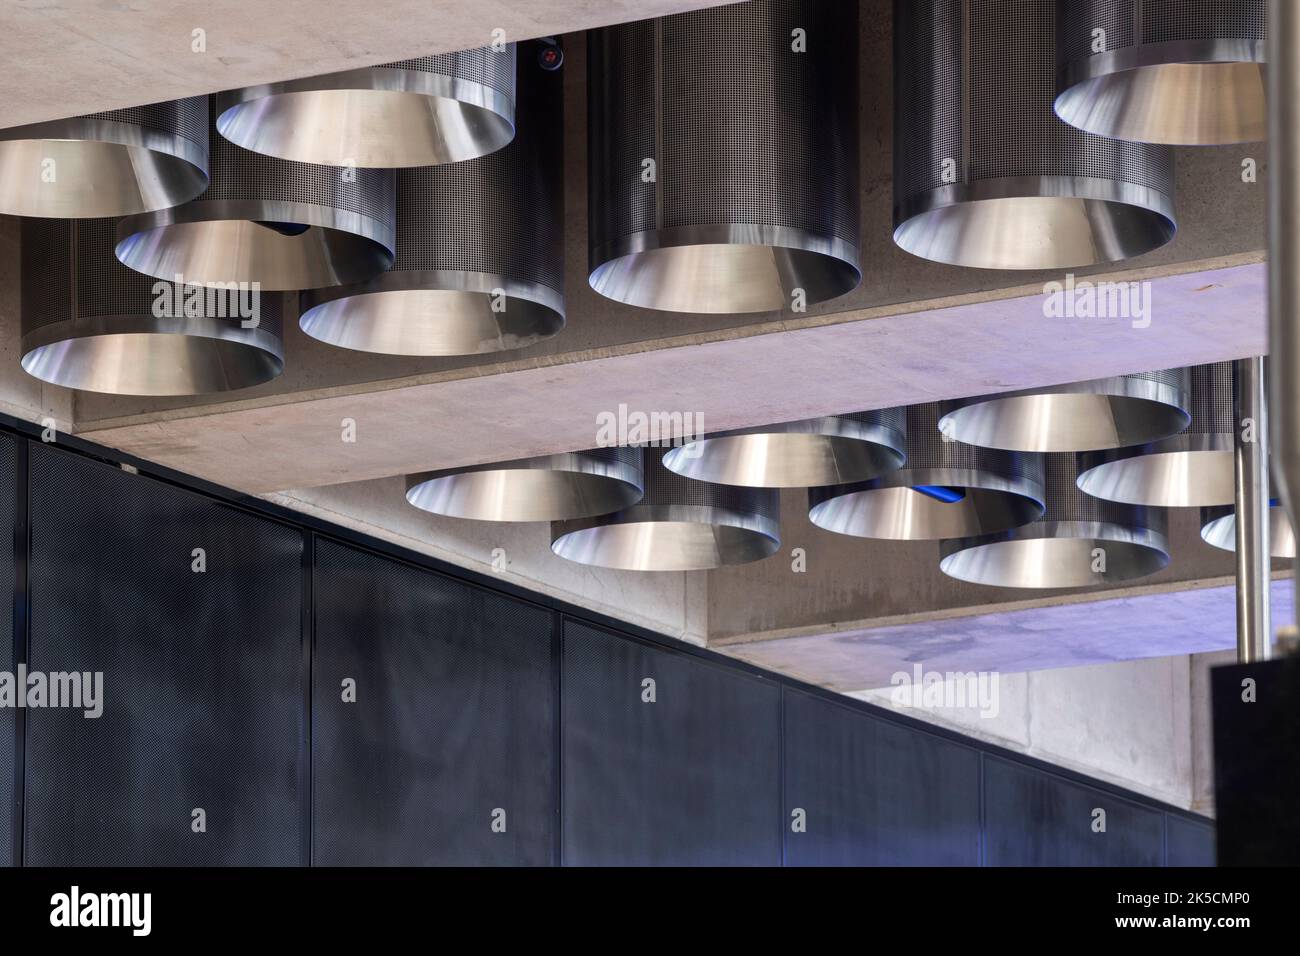 Detailansicht der Beleuchtungs-Trommeln. Tottenham Court Road Crossrail Station, London, Großbritannien. Architekt: Hawkins Brown Architects LLP, 2022. Stockfoto